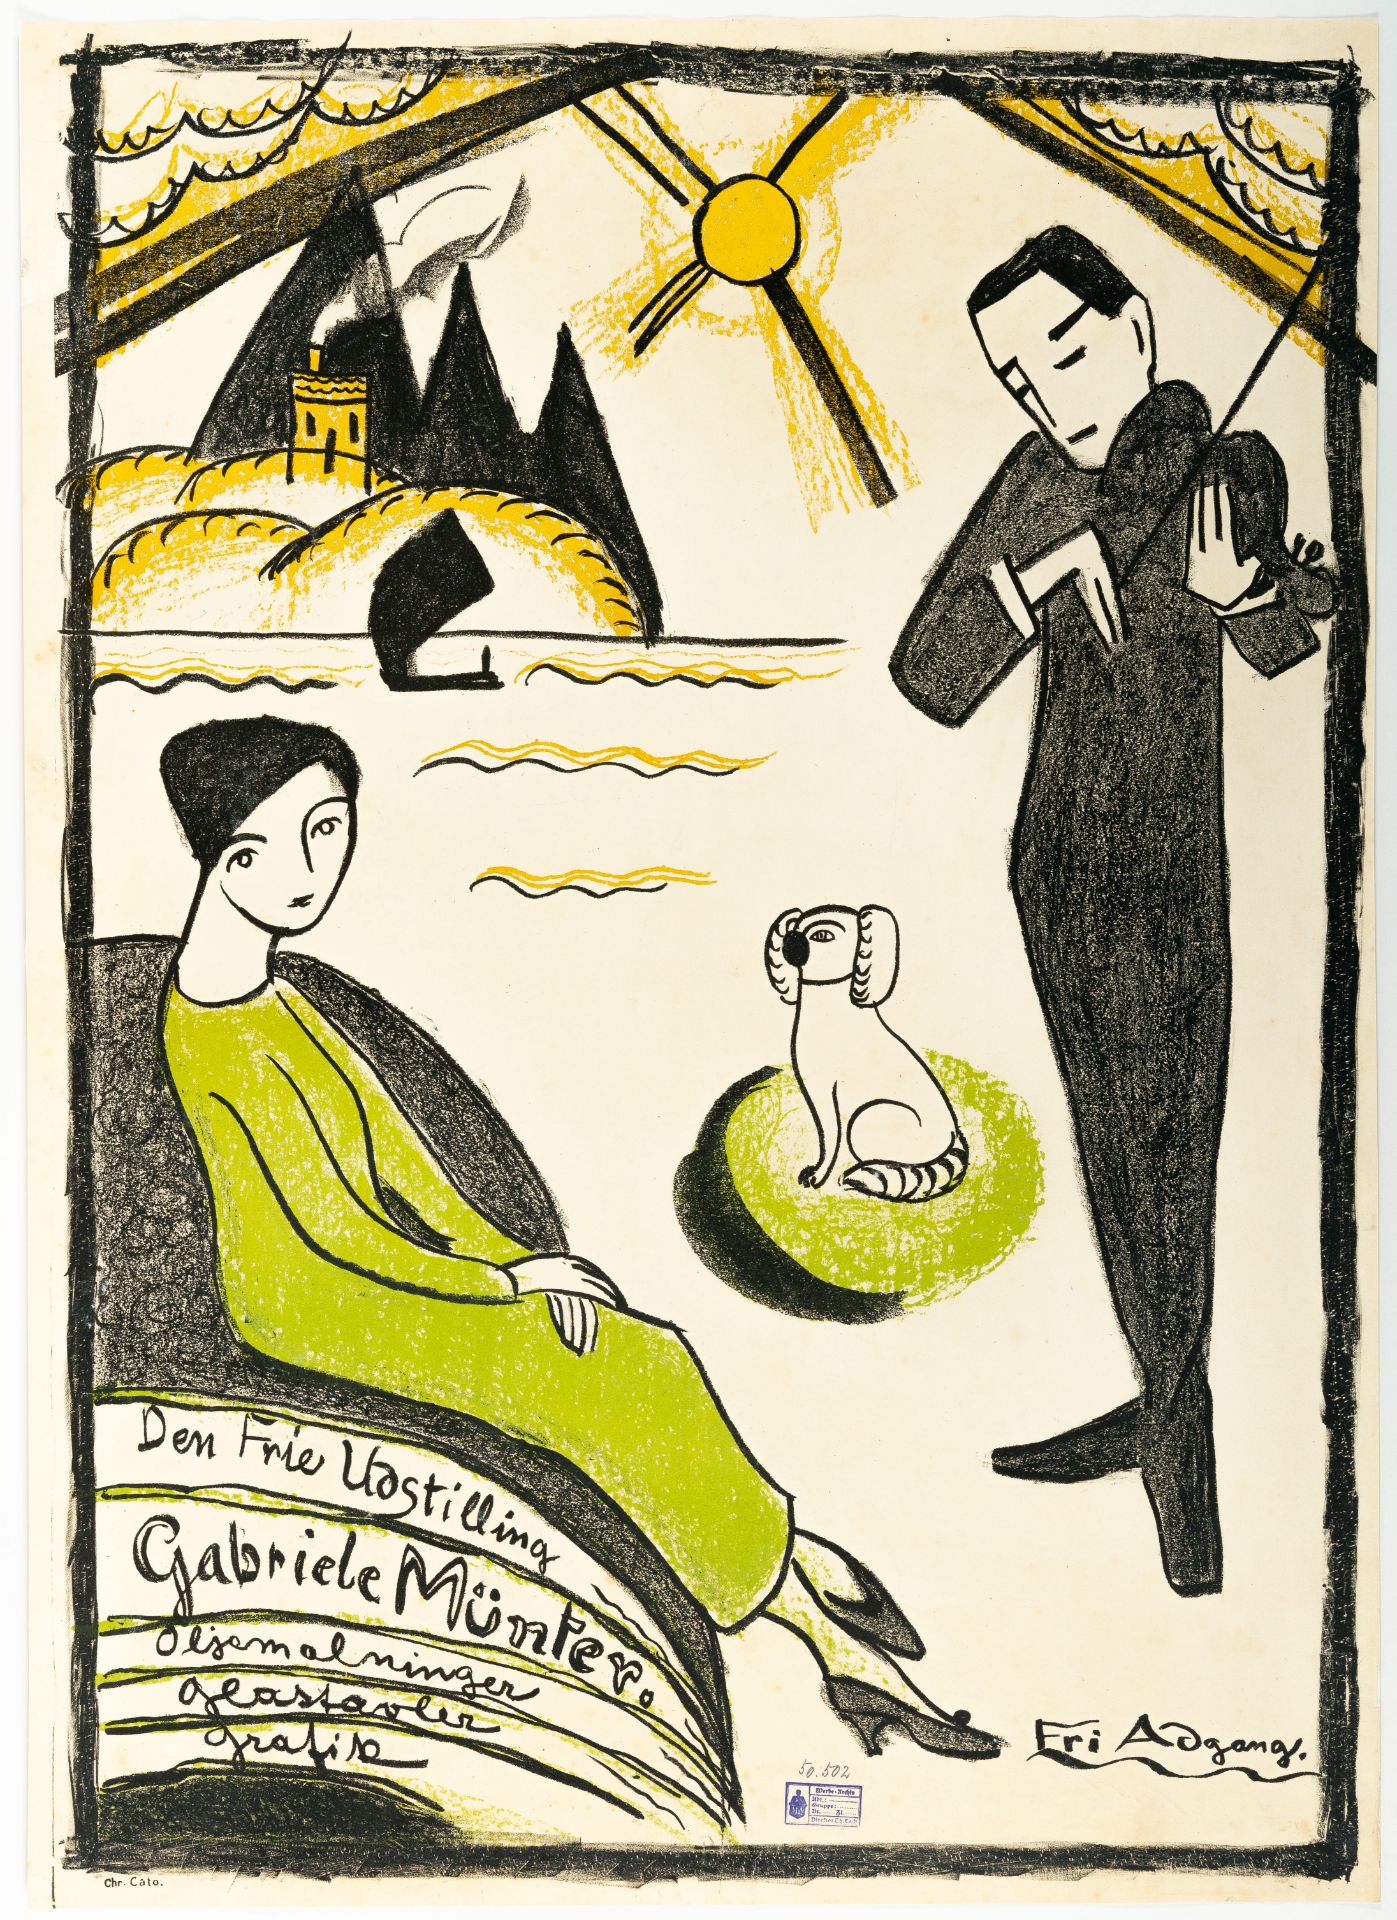 Gabriele Münter (1877 Berlin - Murnau 1962) – Plakat für die Gabriele Münter Ausstellung Kopenhagen - Bild 2 aus 3